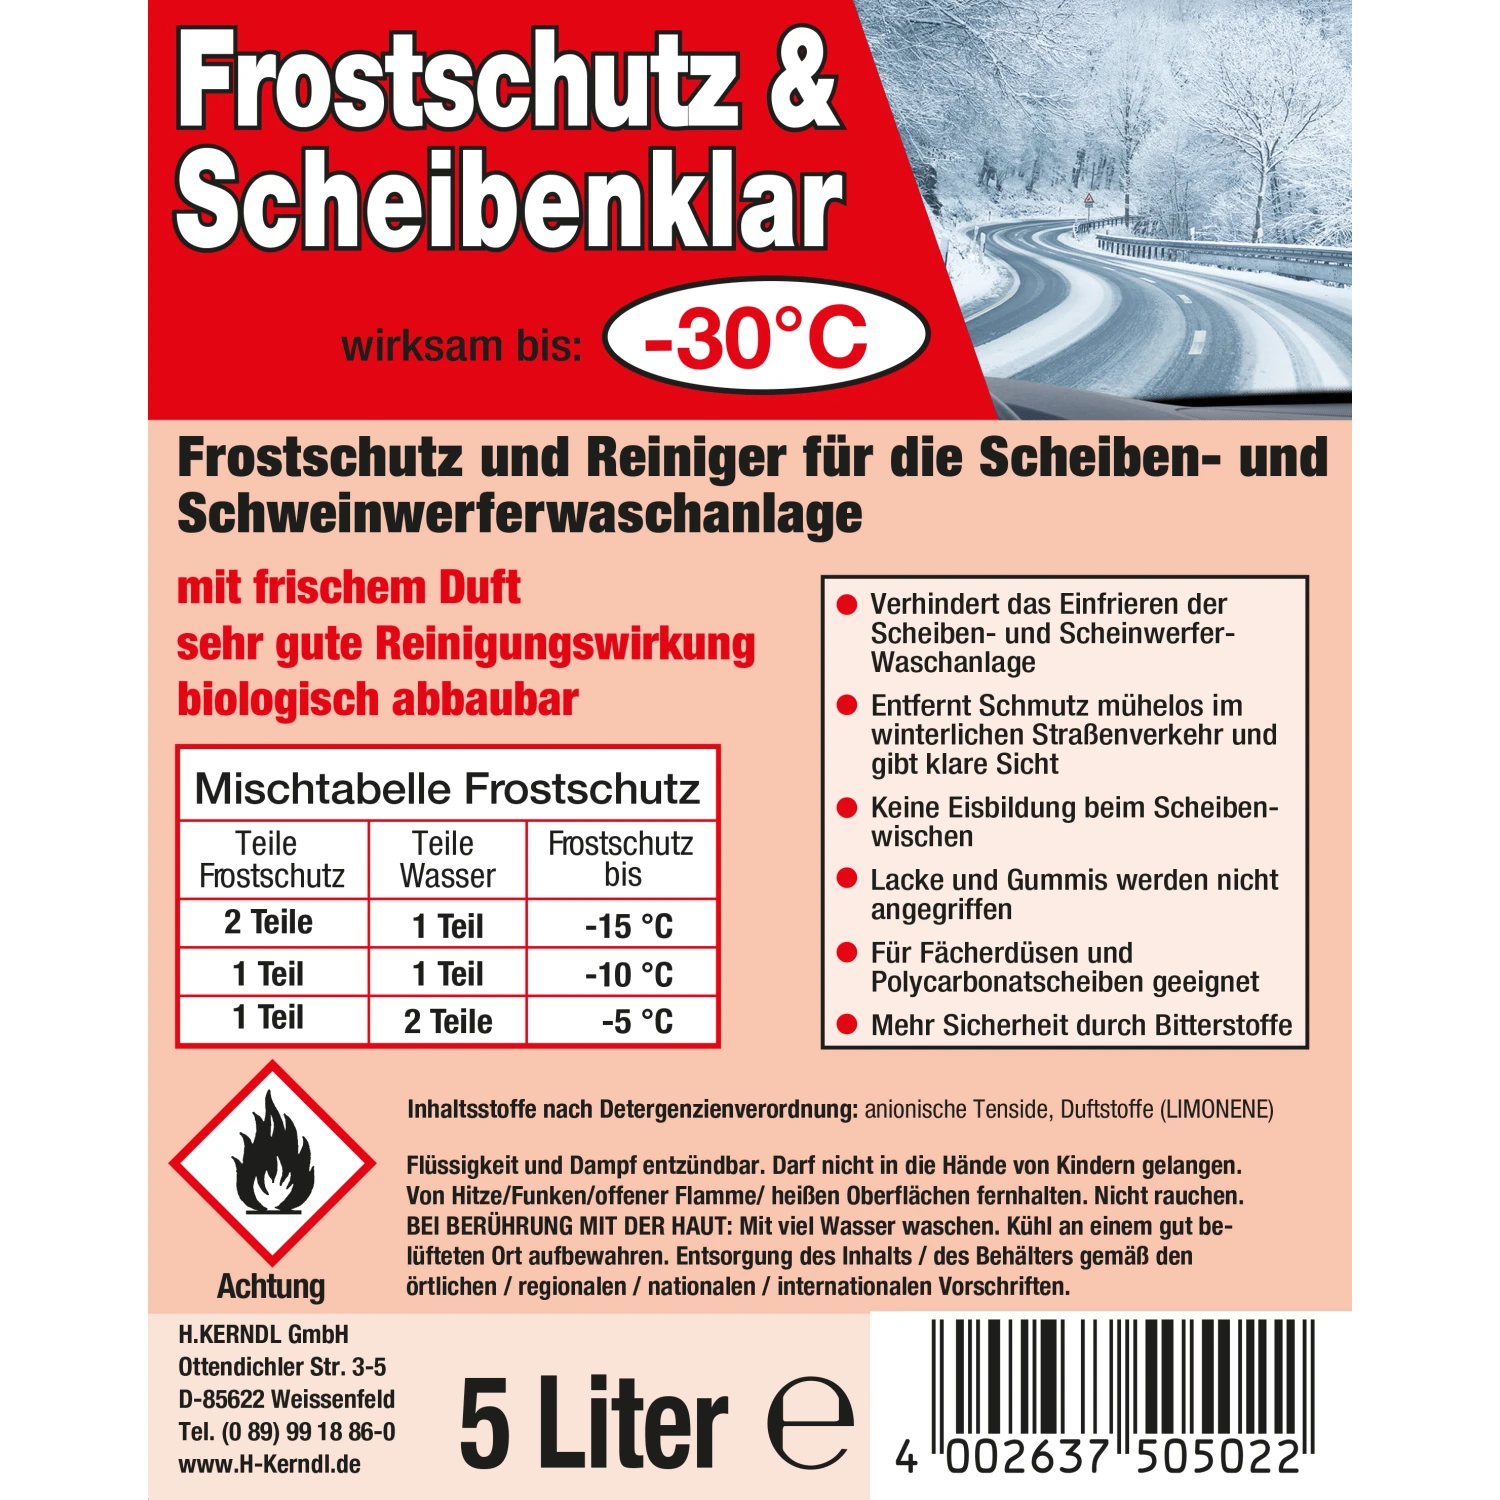 Frostschutz & Scheibenklar -30°C 5 l Schnabelkanne